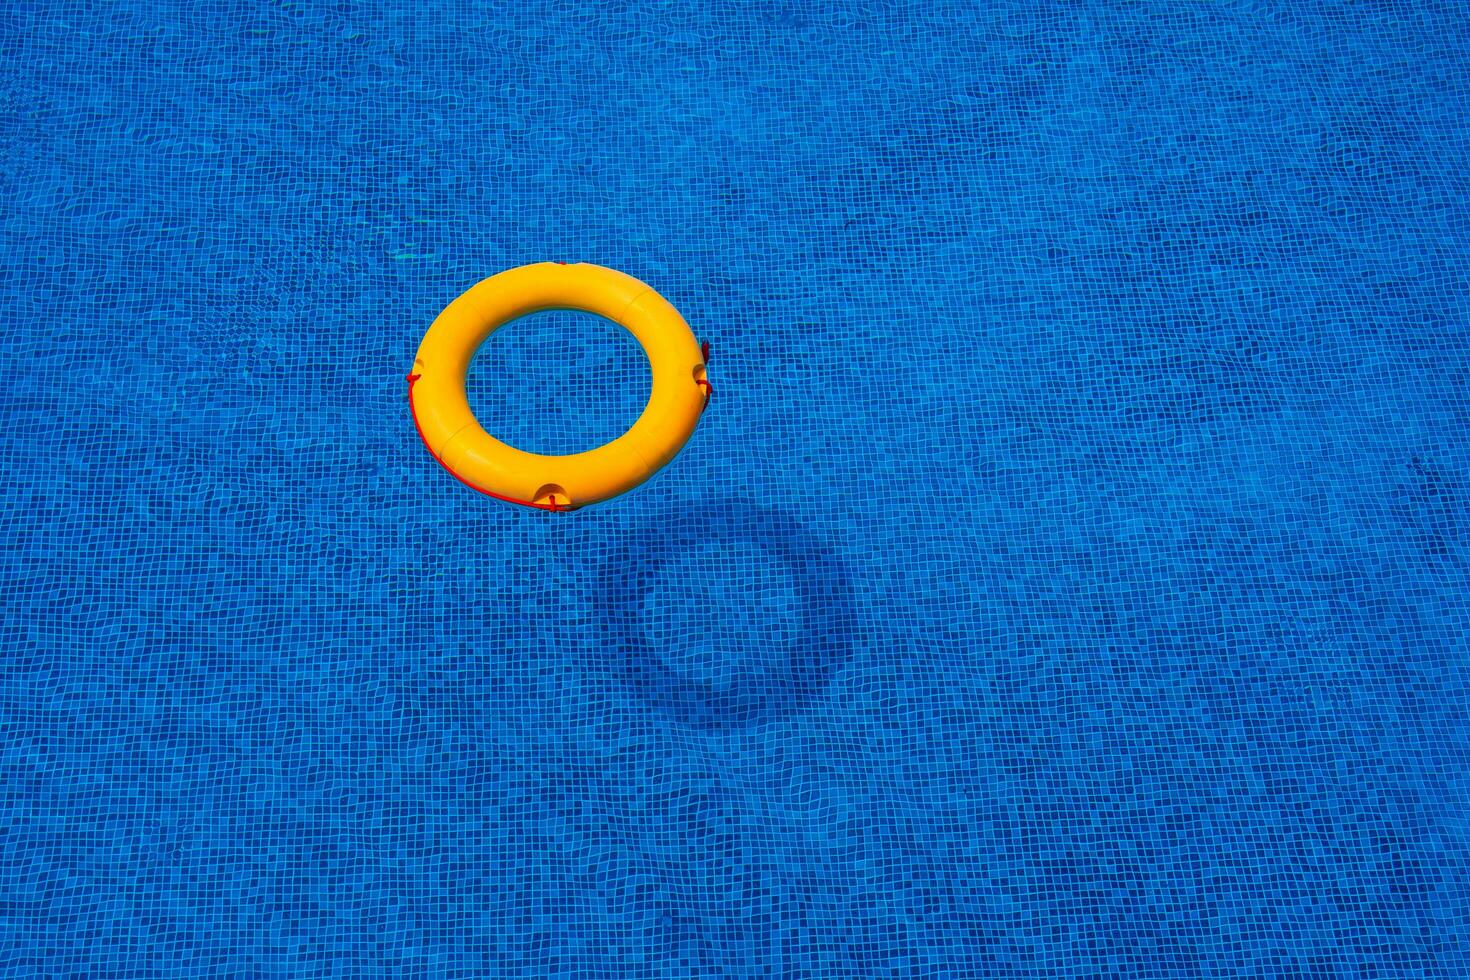 topo Visão do bóia salva-vidas flutuando dentro azul natação piscina, suave foco. foto